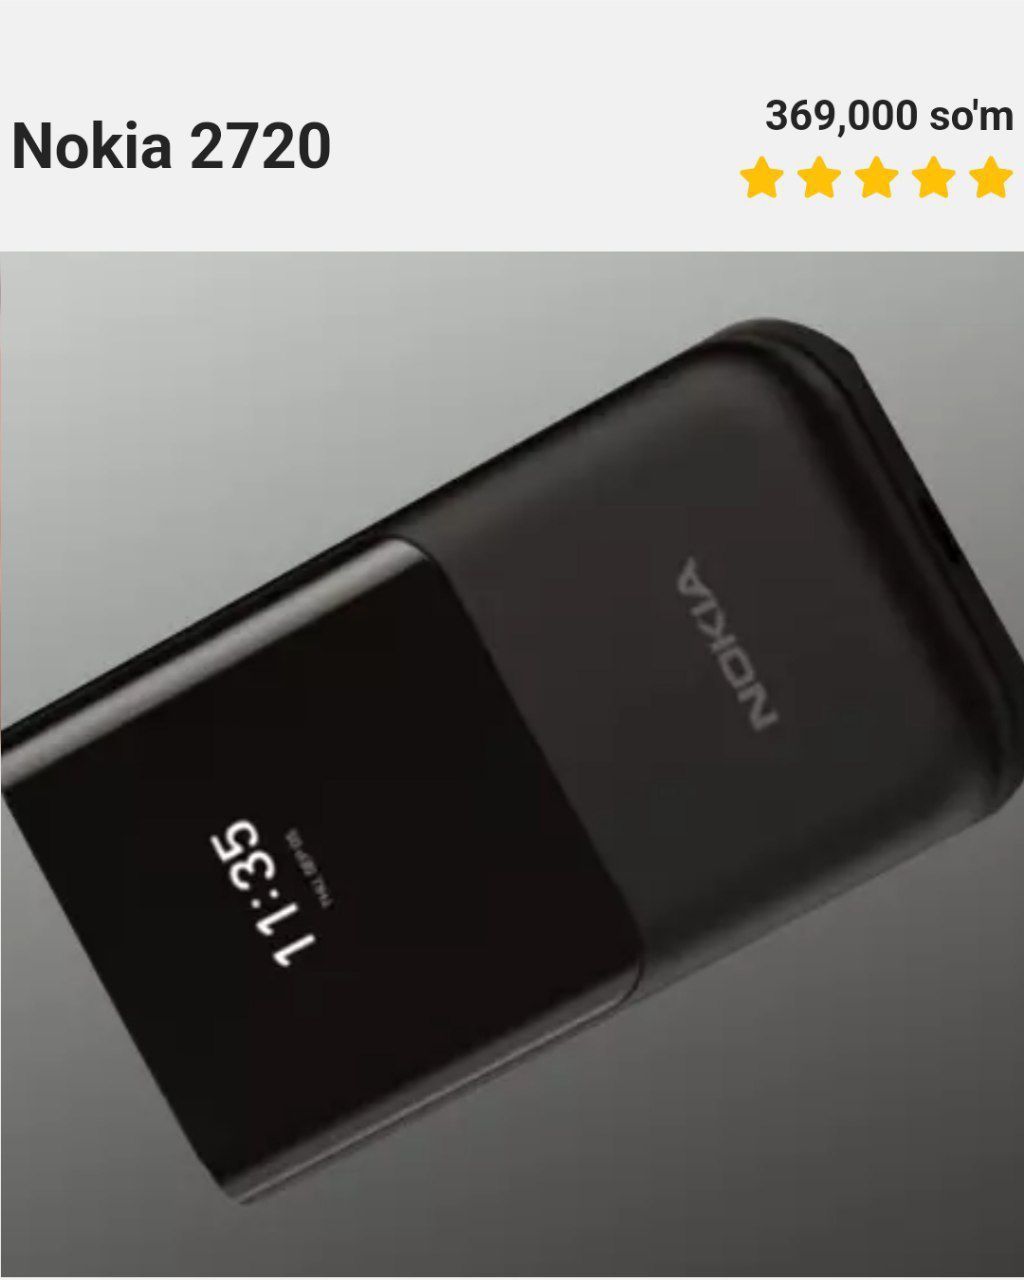 Nokia2720 chegirmada